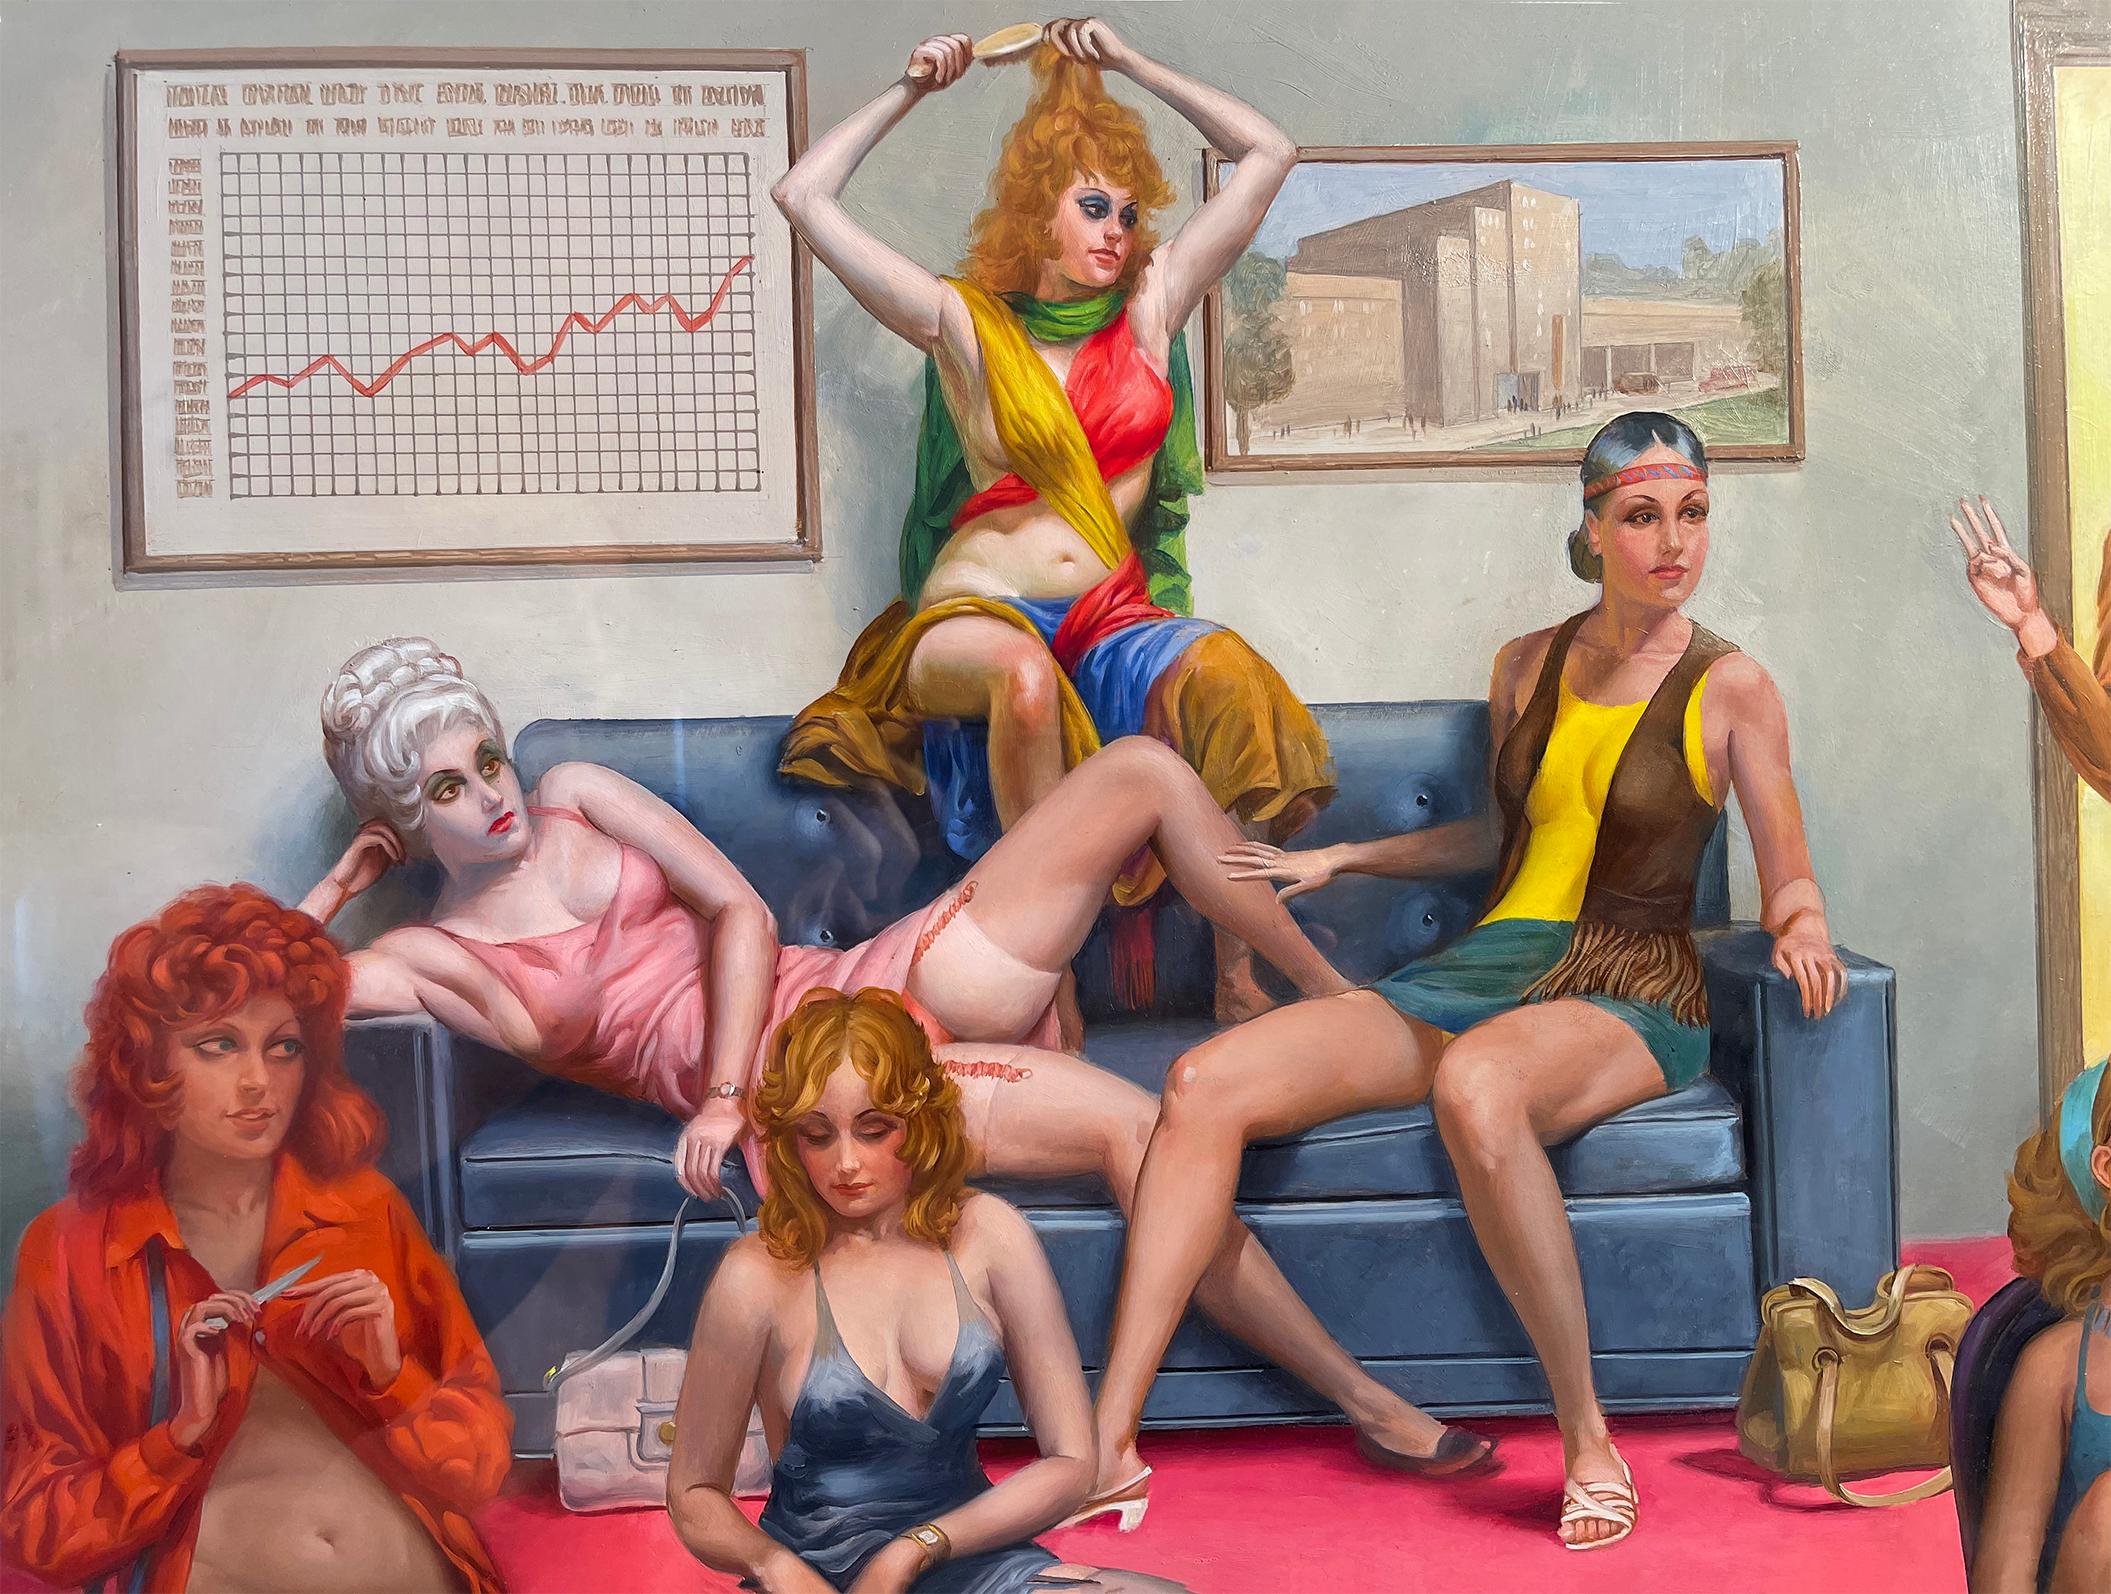 Bordel, Harem groovy avec Courtesan, Concubine, Paramour, Playboy Magazine - Painting de George Hirsch